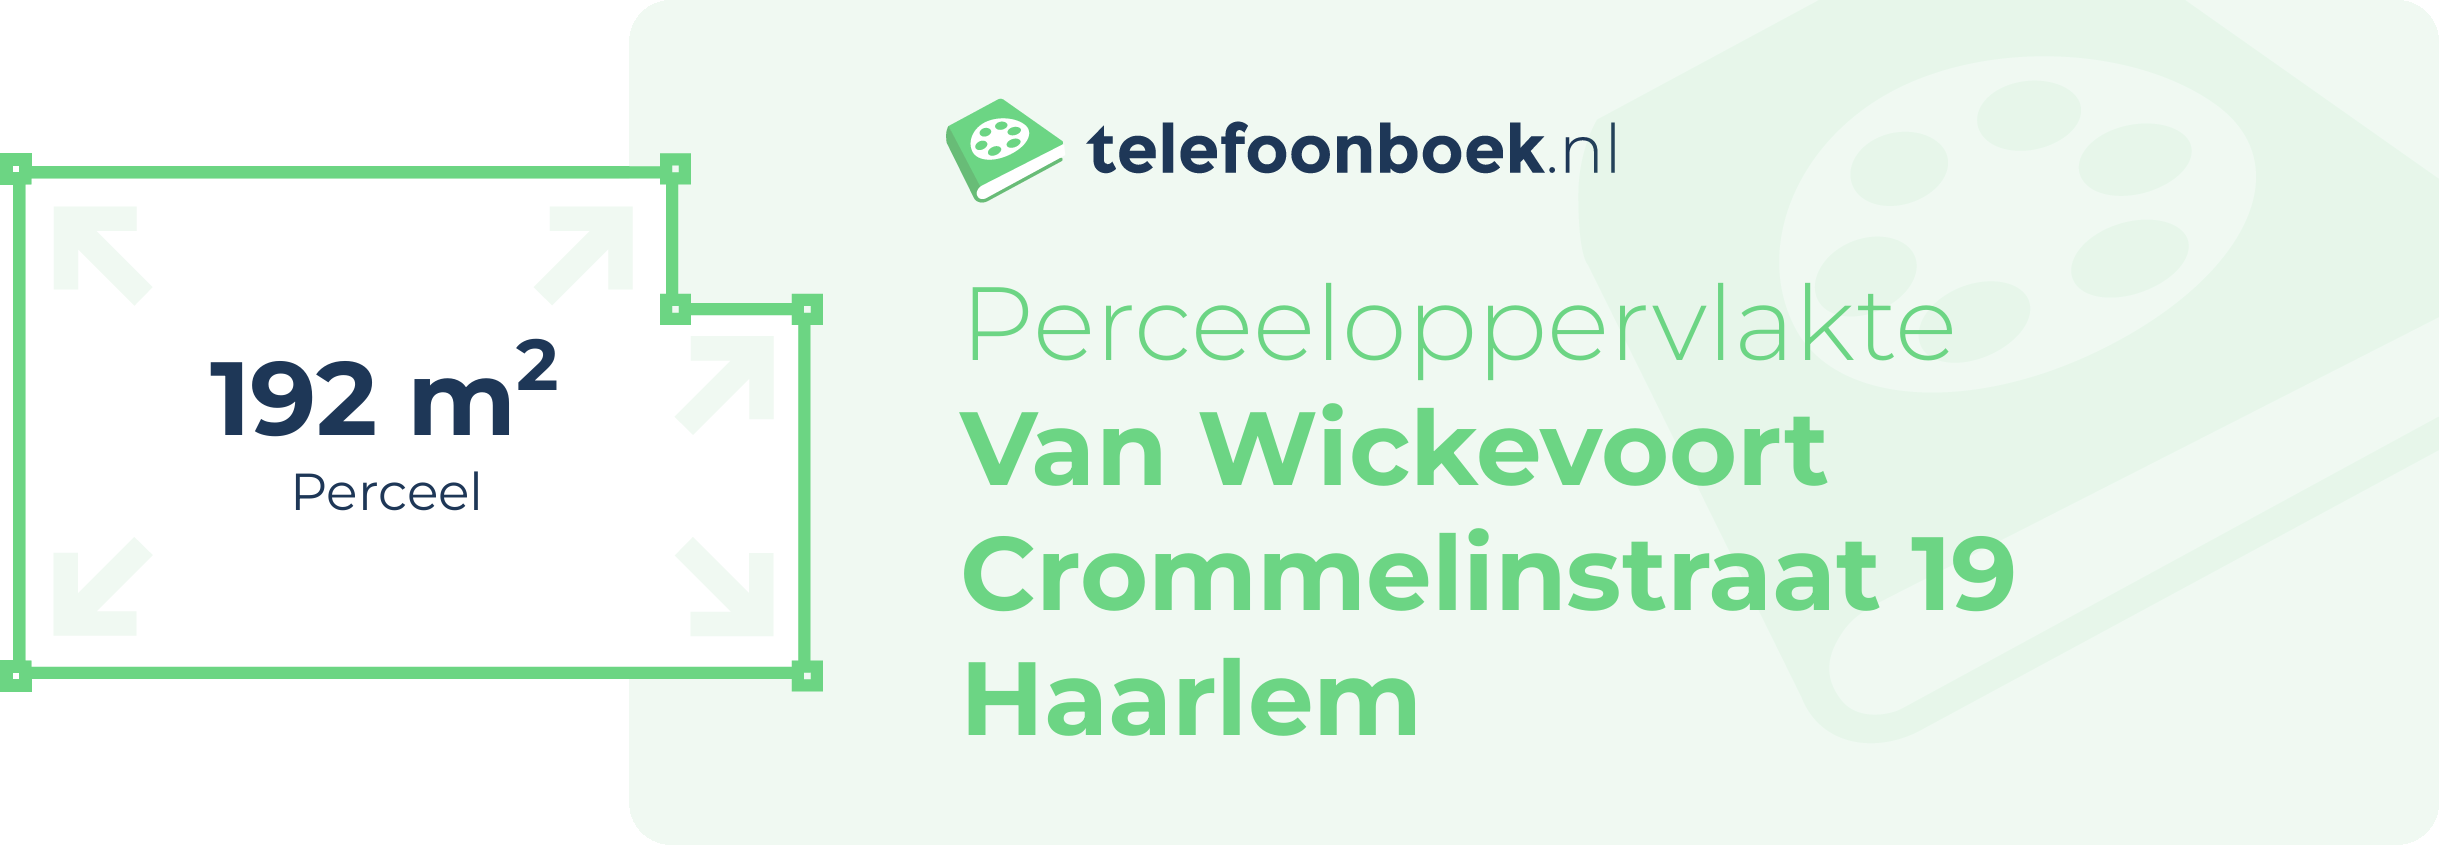 Perceeloppervlakte Van Wickevoort Crommelinstraat 19 Haarlem